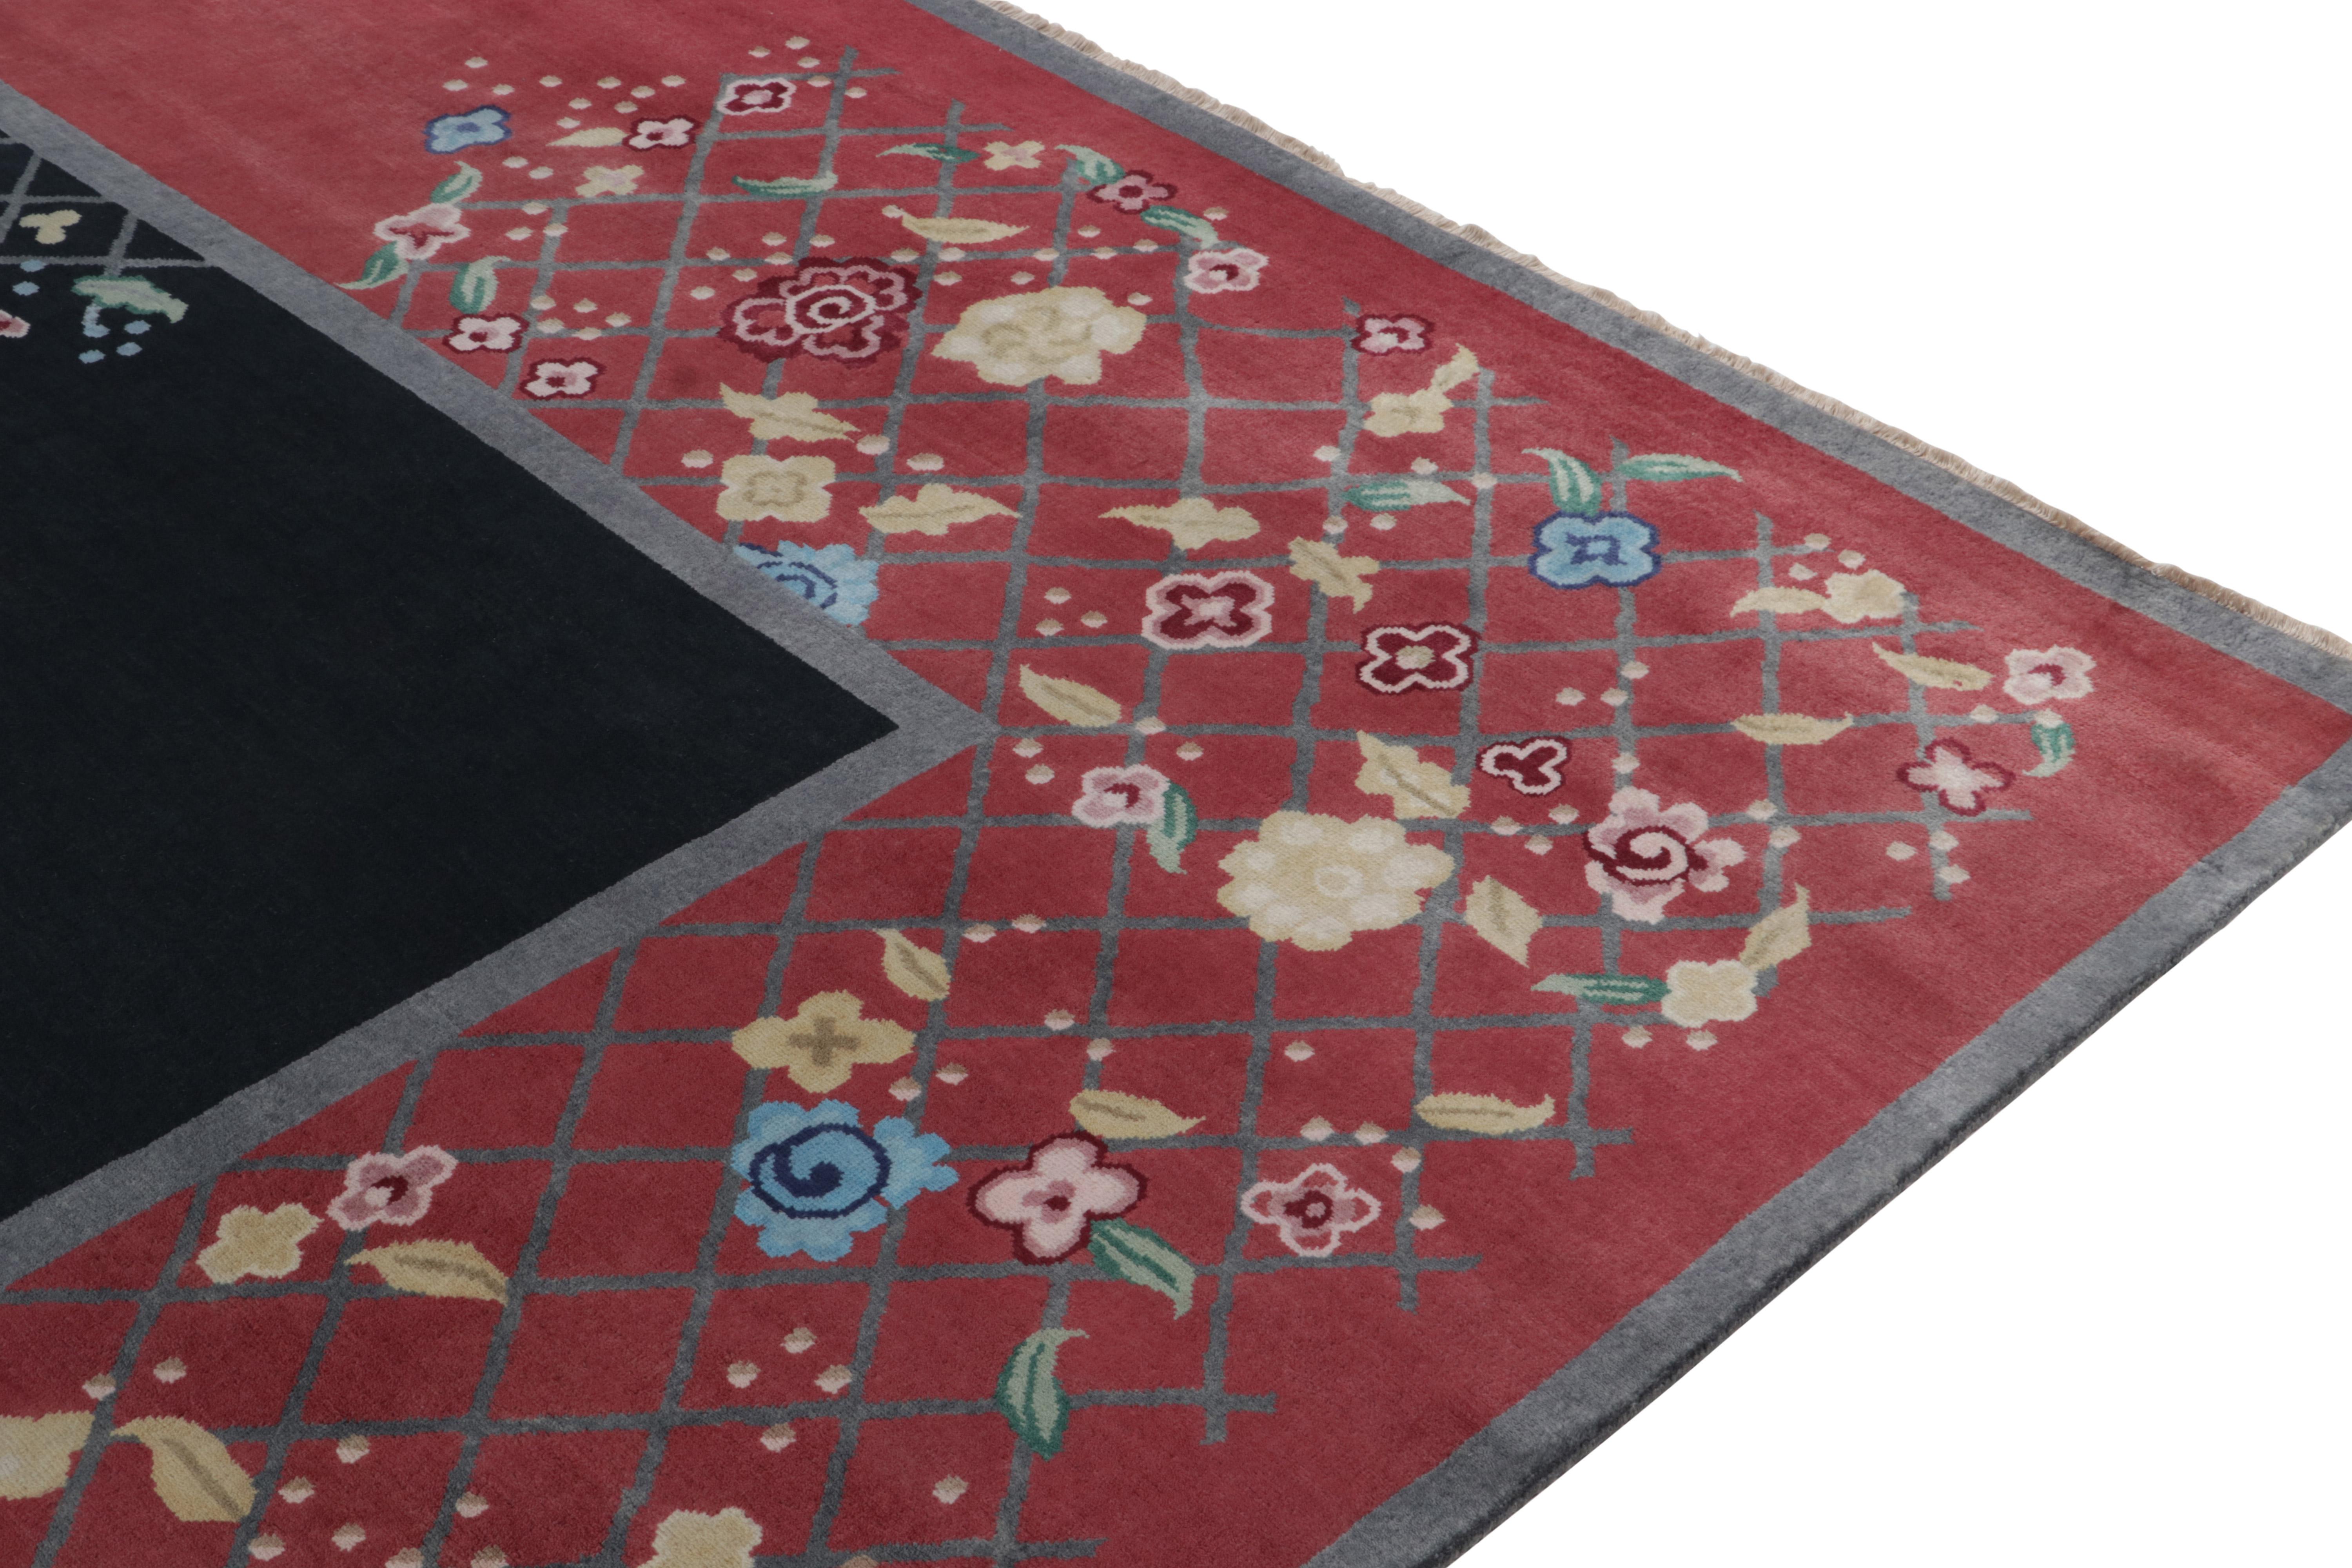 Chinesischer Teppich im Deko-Stil von Teppich & Kilims in Schwarz und Rot mit bunten Blumenmustern (Handgeknüpft) im Angebot